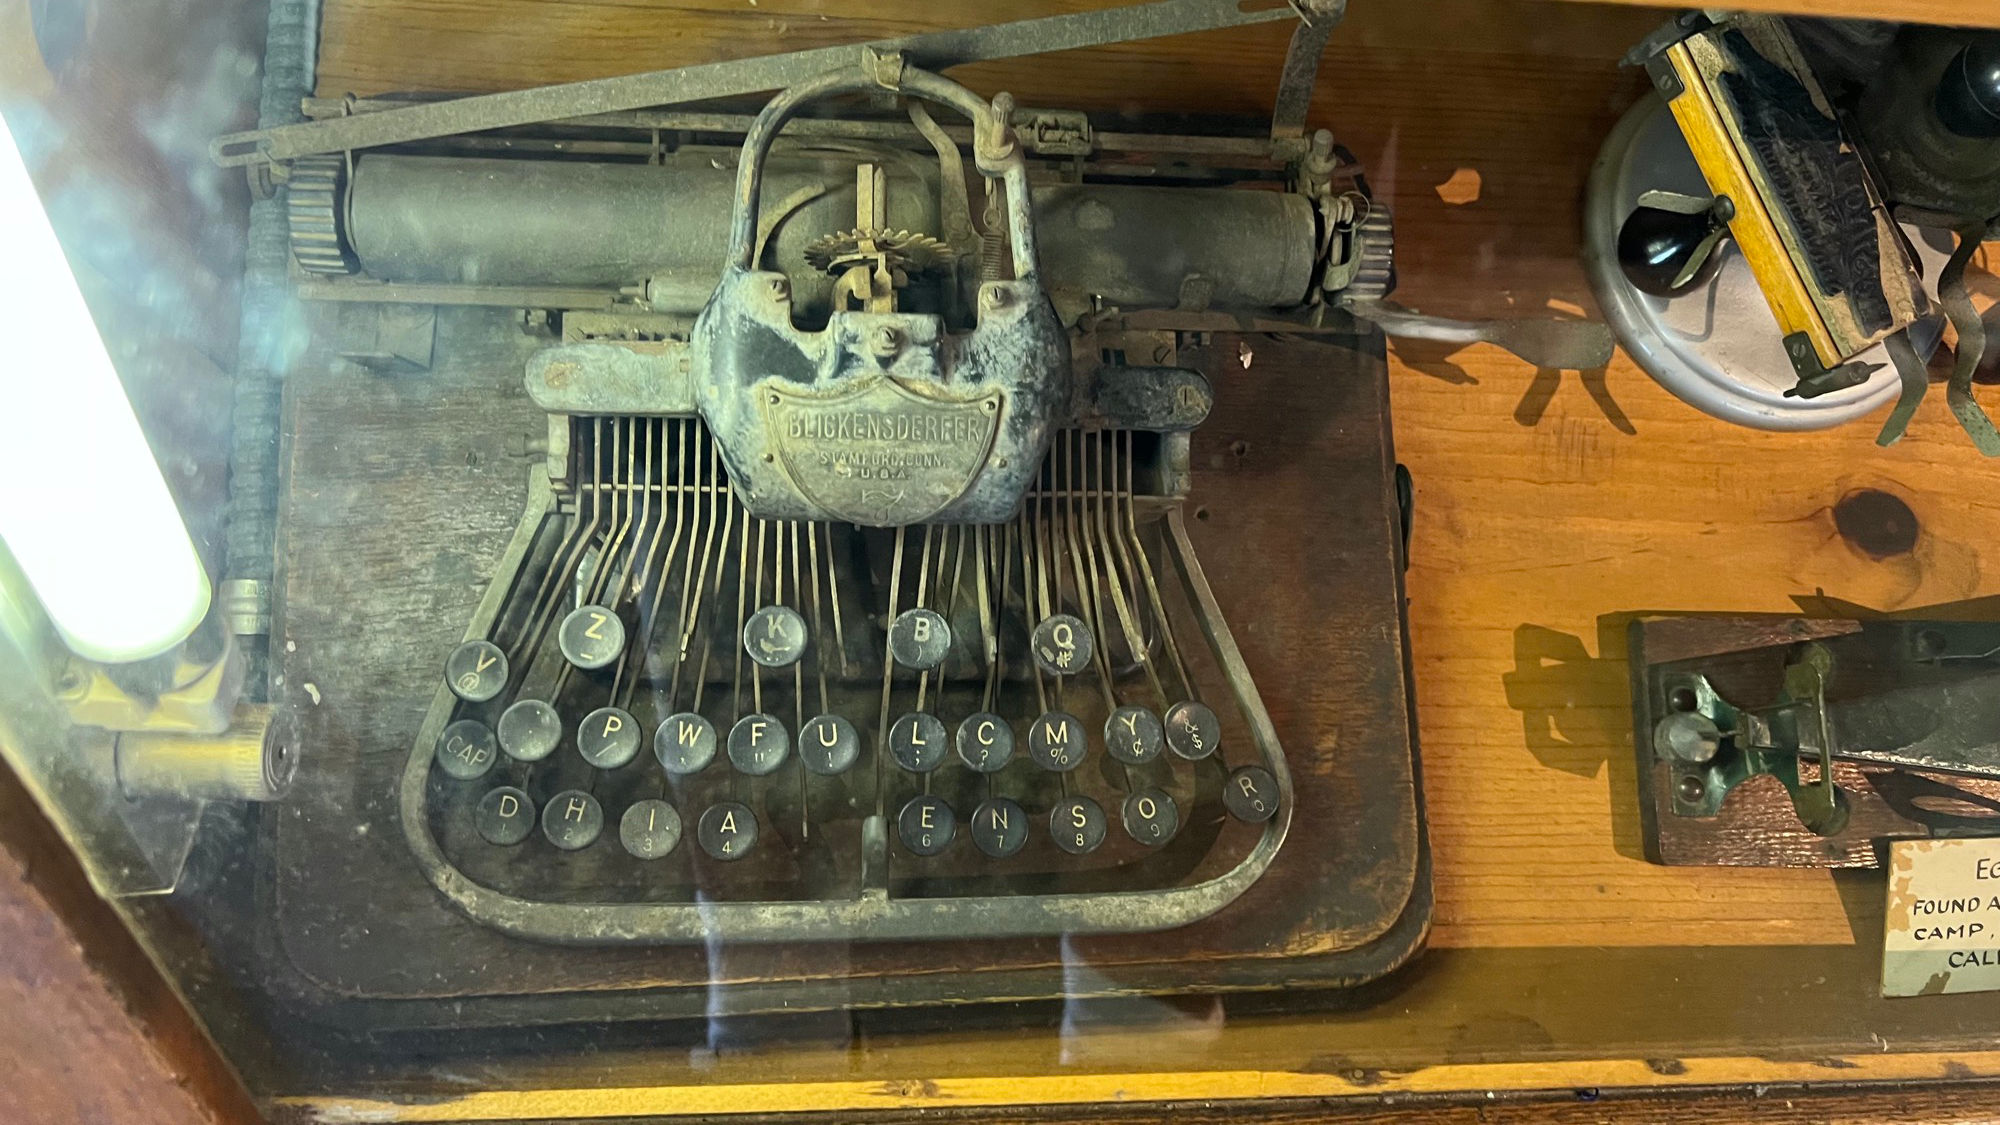 Western Trails Museum Blickensderfer Typewriter